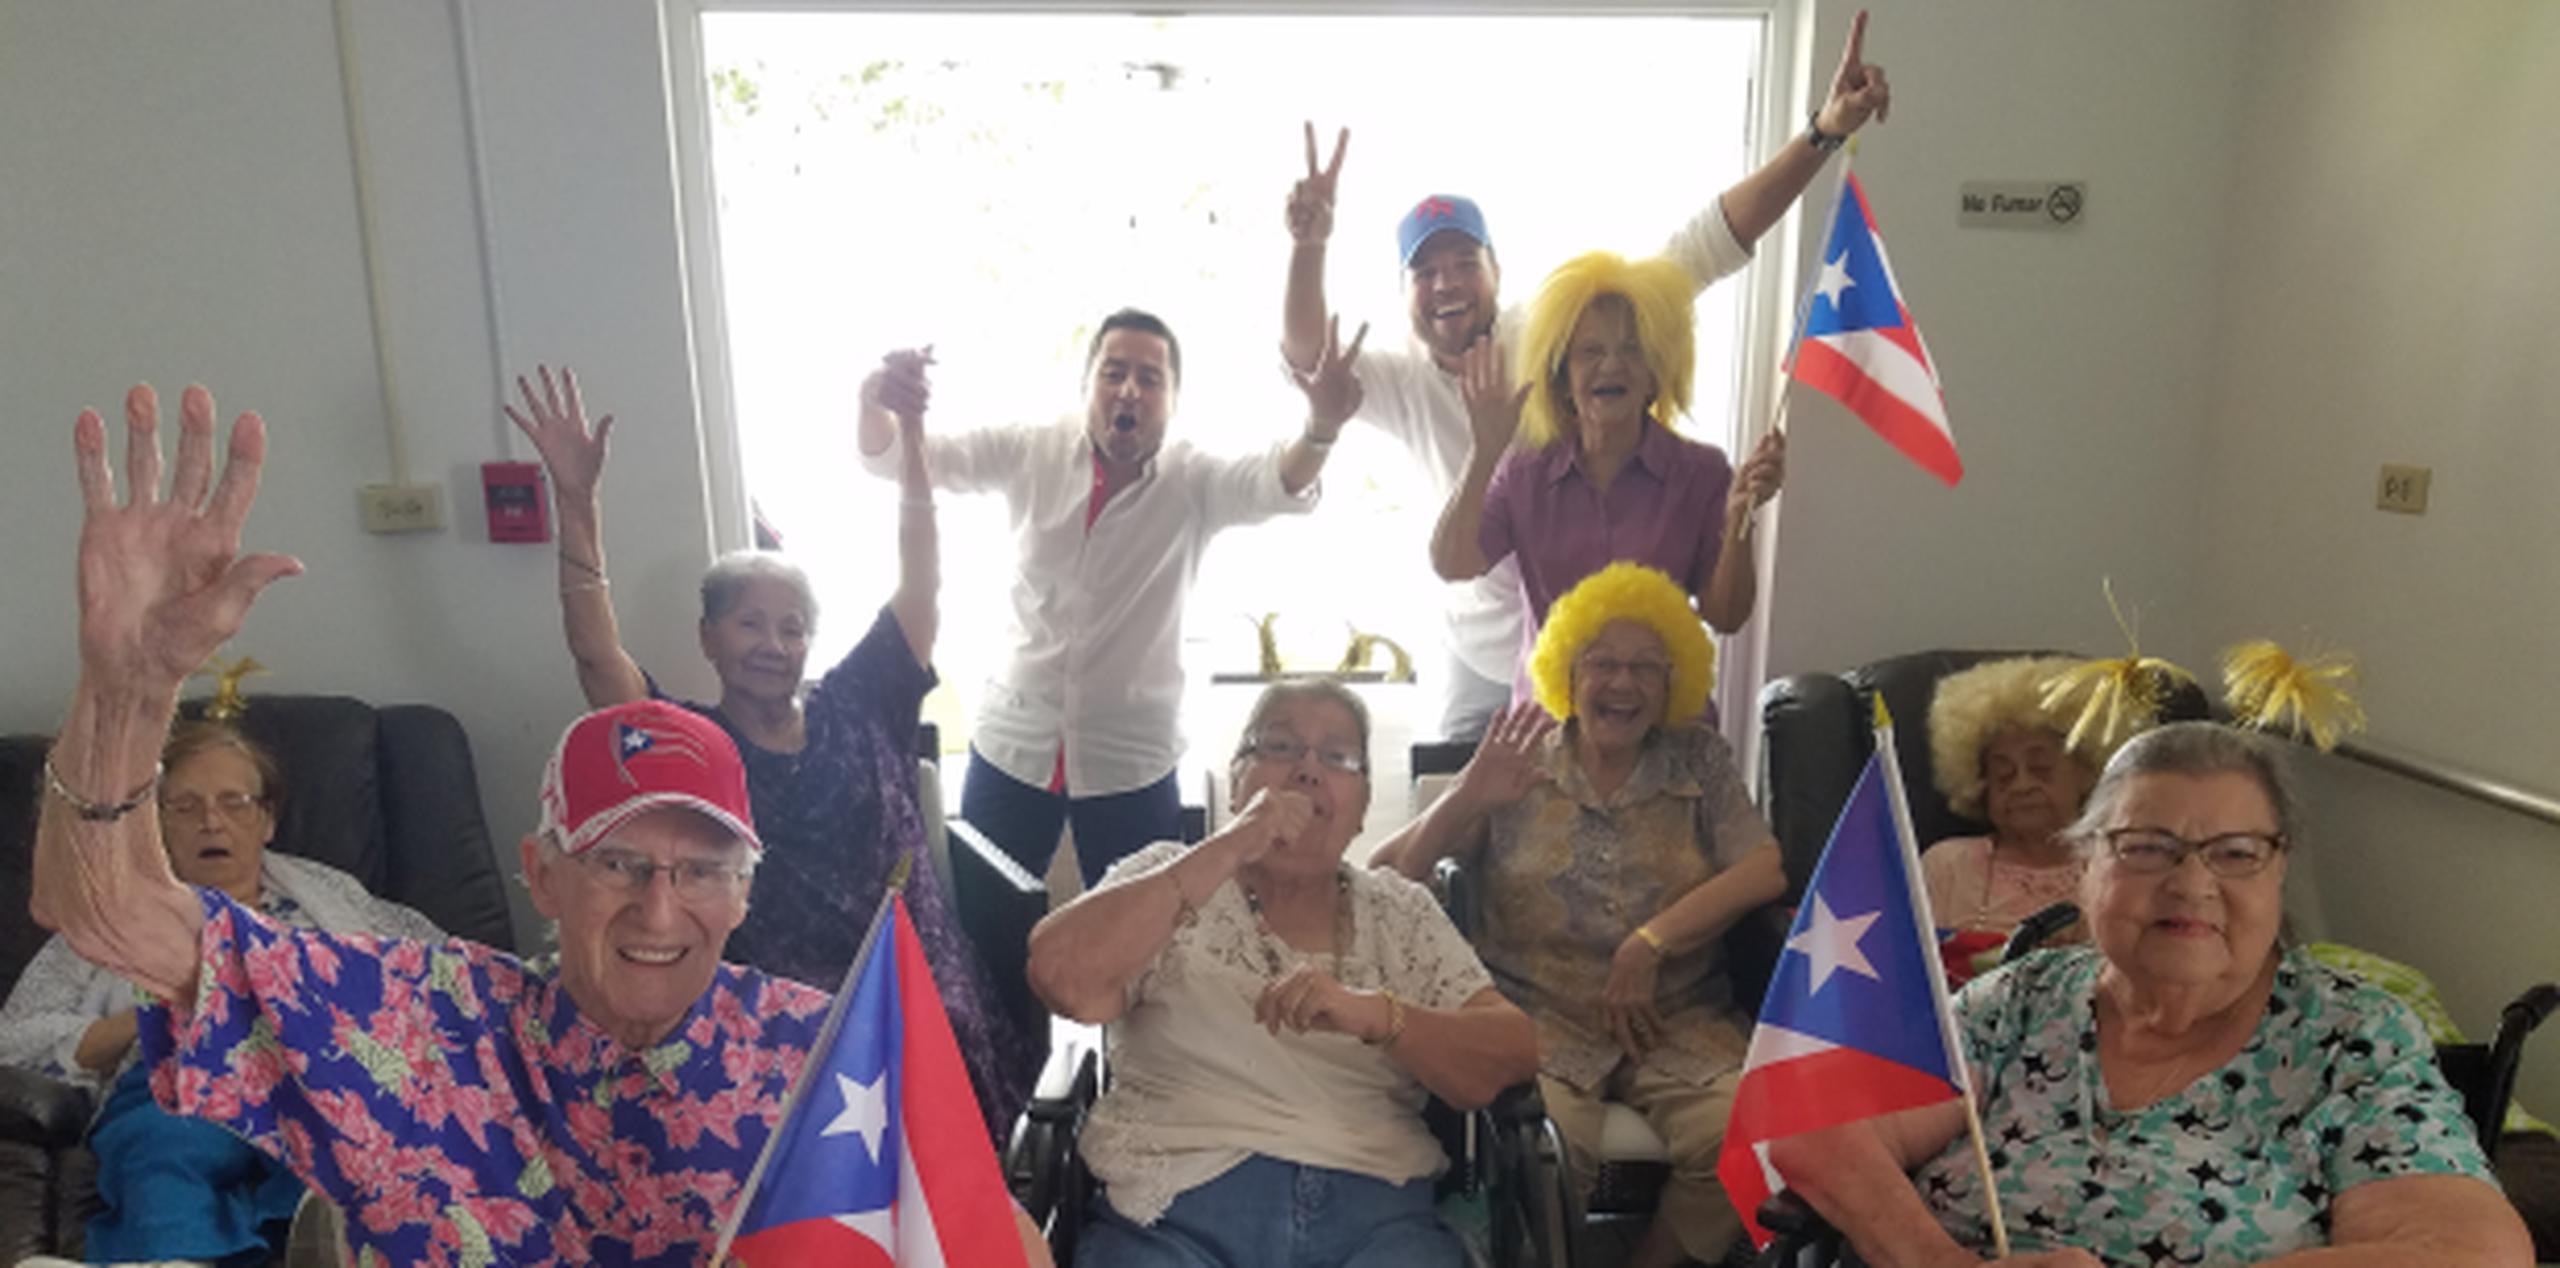 El grupo de ancianos, quienes tienen entre 67 y 100 años de edad, se convirtió en fanáticos del equipo de Puerto Rico al usar pelucas y diademas rubias, banderas de la Isla y gorras de béisbol. (libni.sanjurjo@gfrmedia.com)